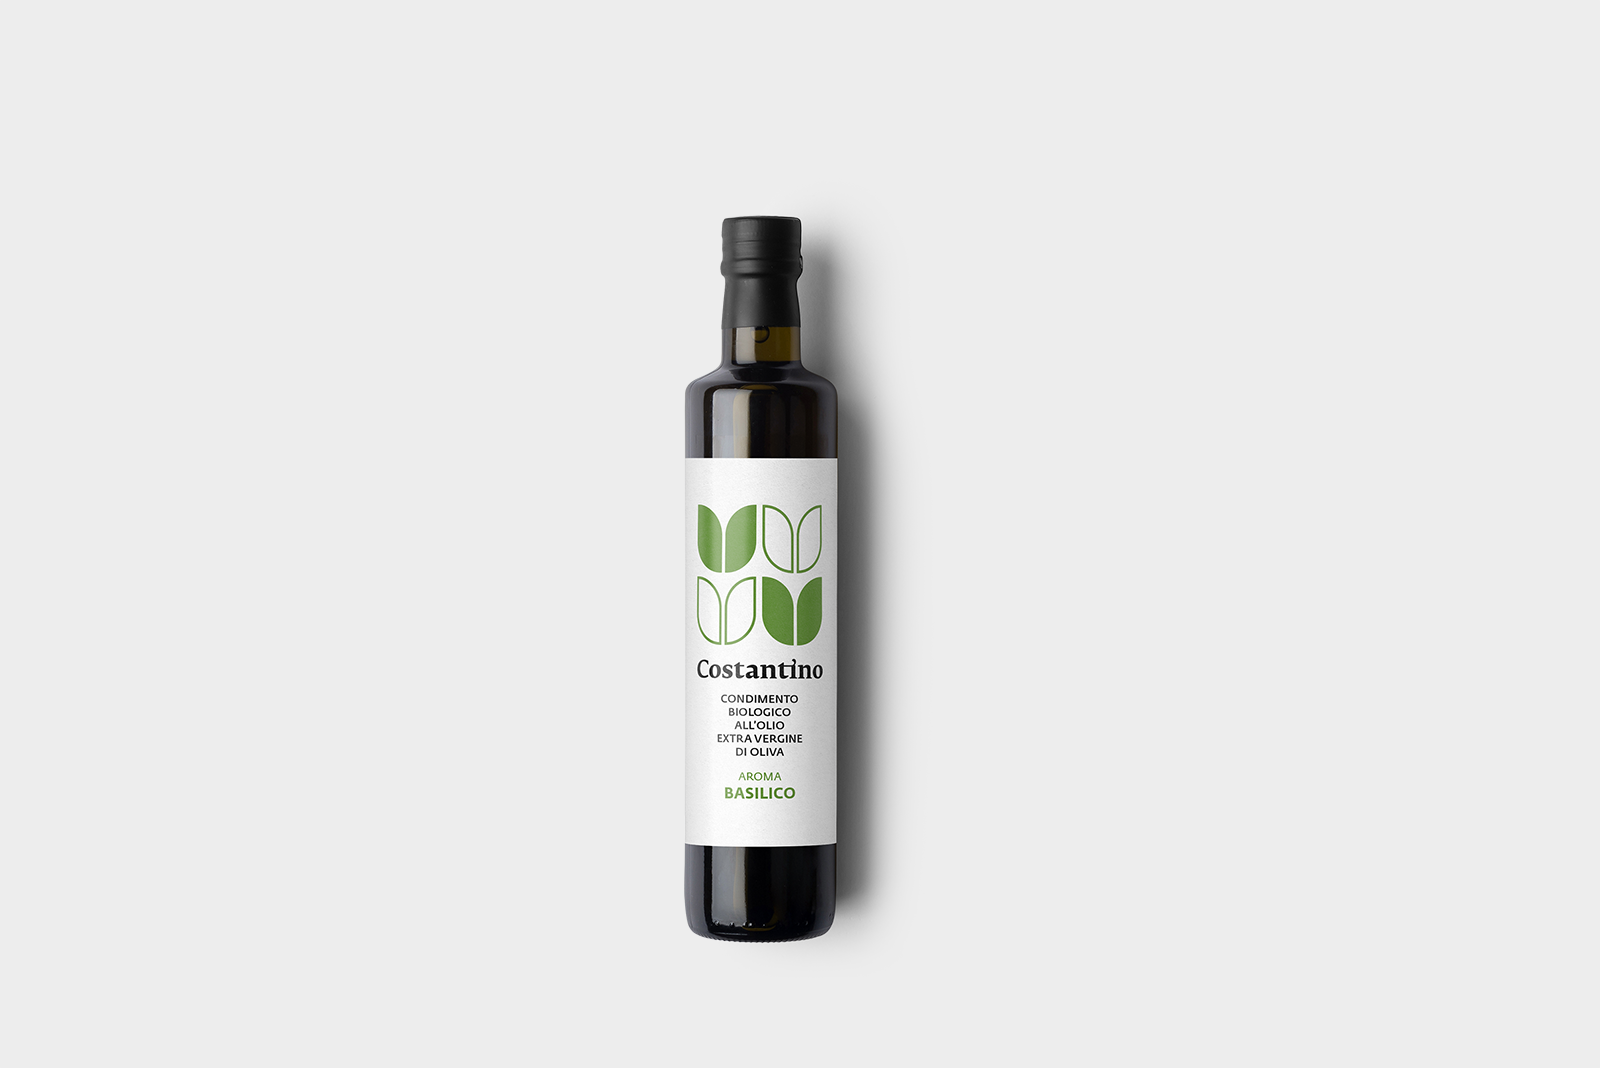 Costantino - Condimento Biologico a base di Olio Extra Vergine d'Oliva e Basilico - bottiglia 25cl